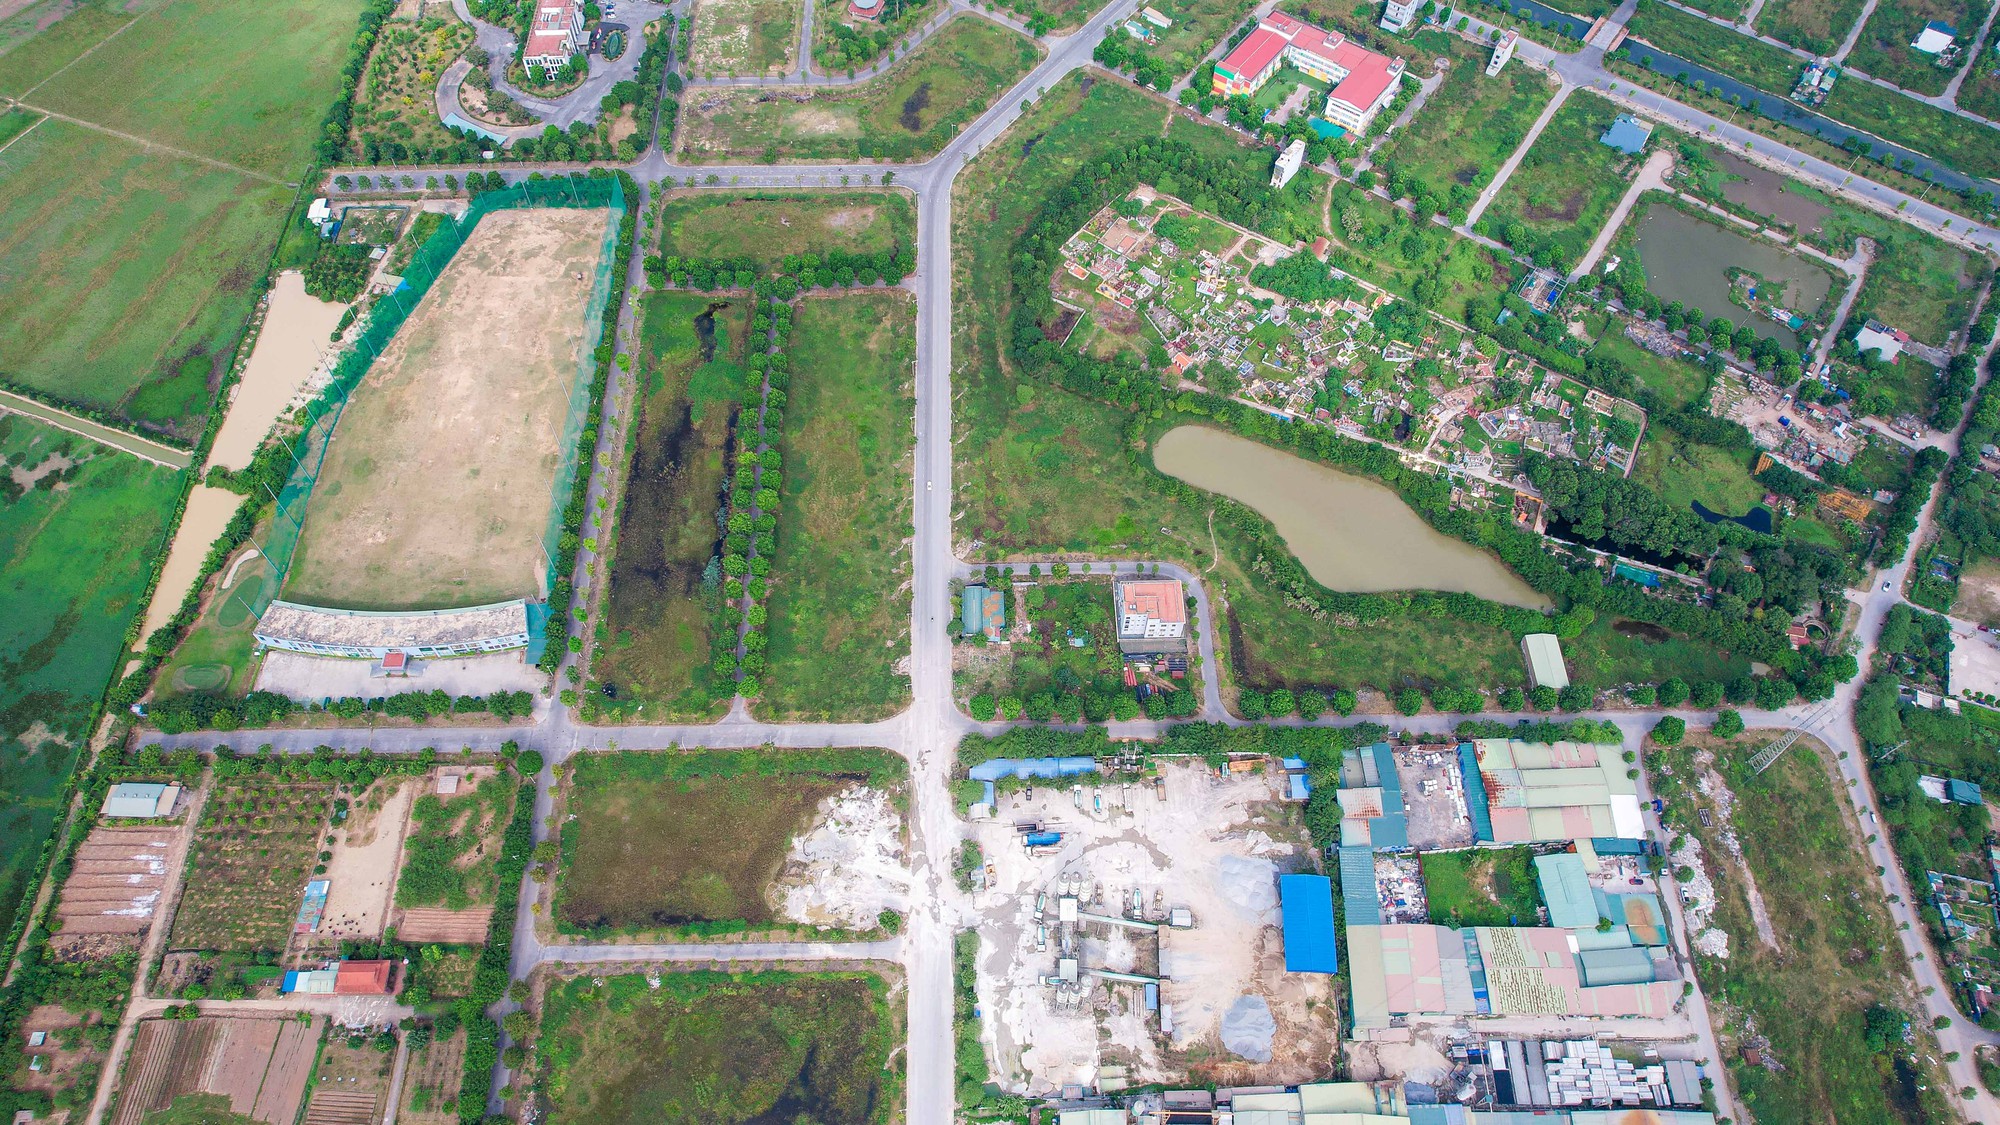 Cận cảnh trạm cấp nước Thanh Hà bị cư dân phàn nàn về chất lượng nước - Ảnh 11.